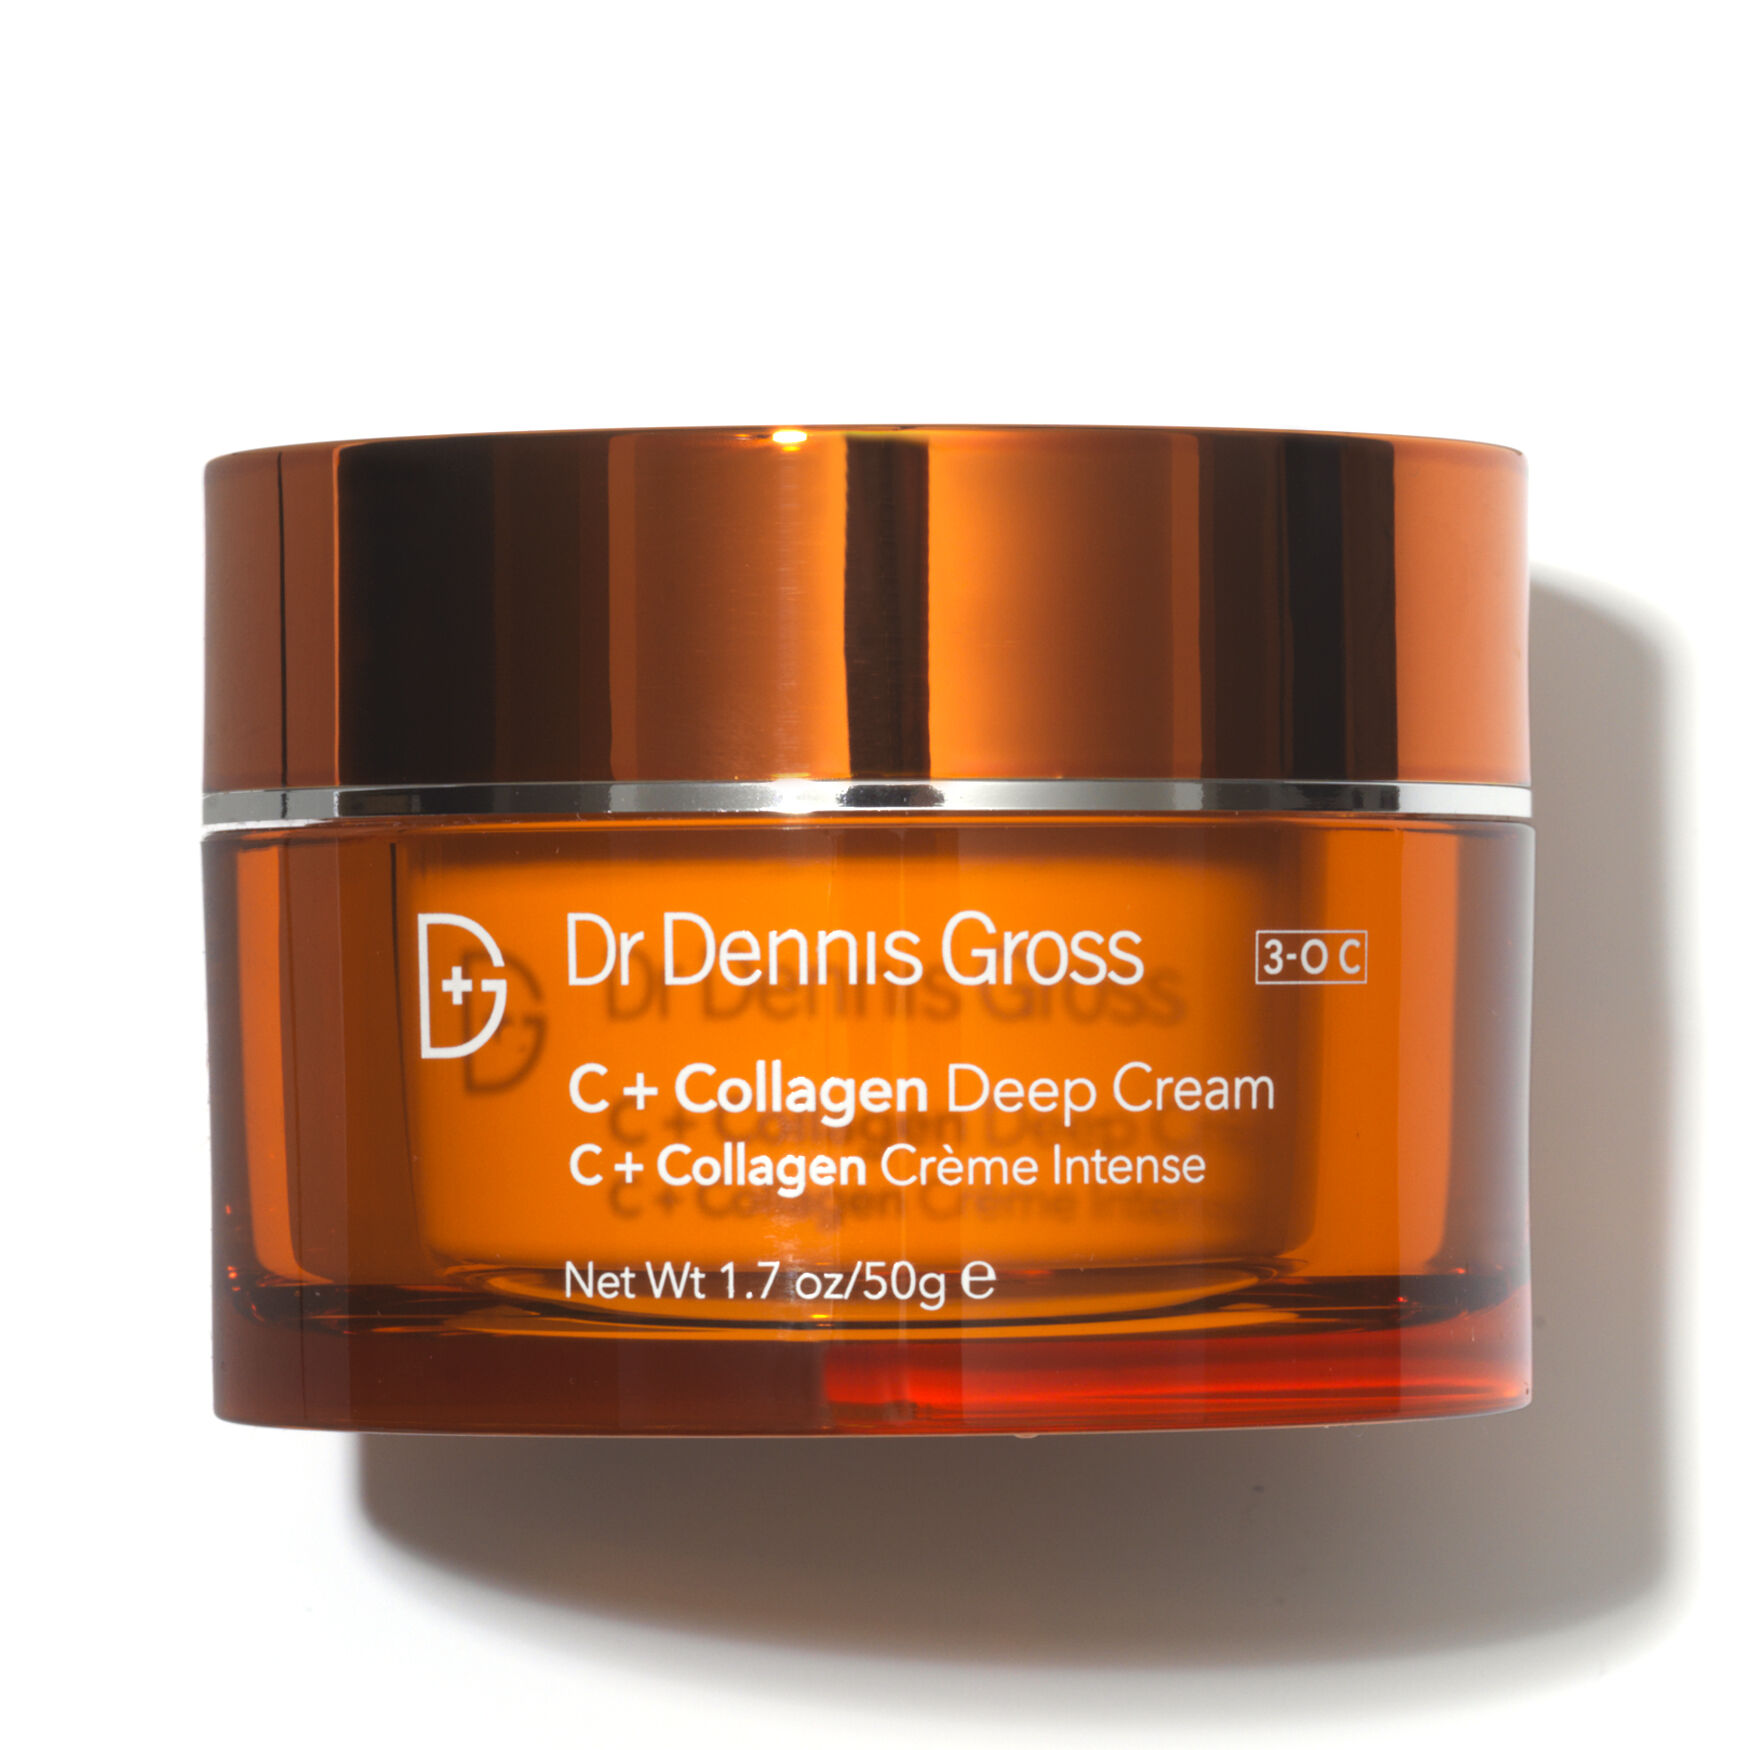 Dr Dennis Gross - C + Collagen Deep Cream